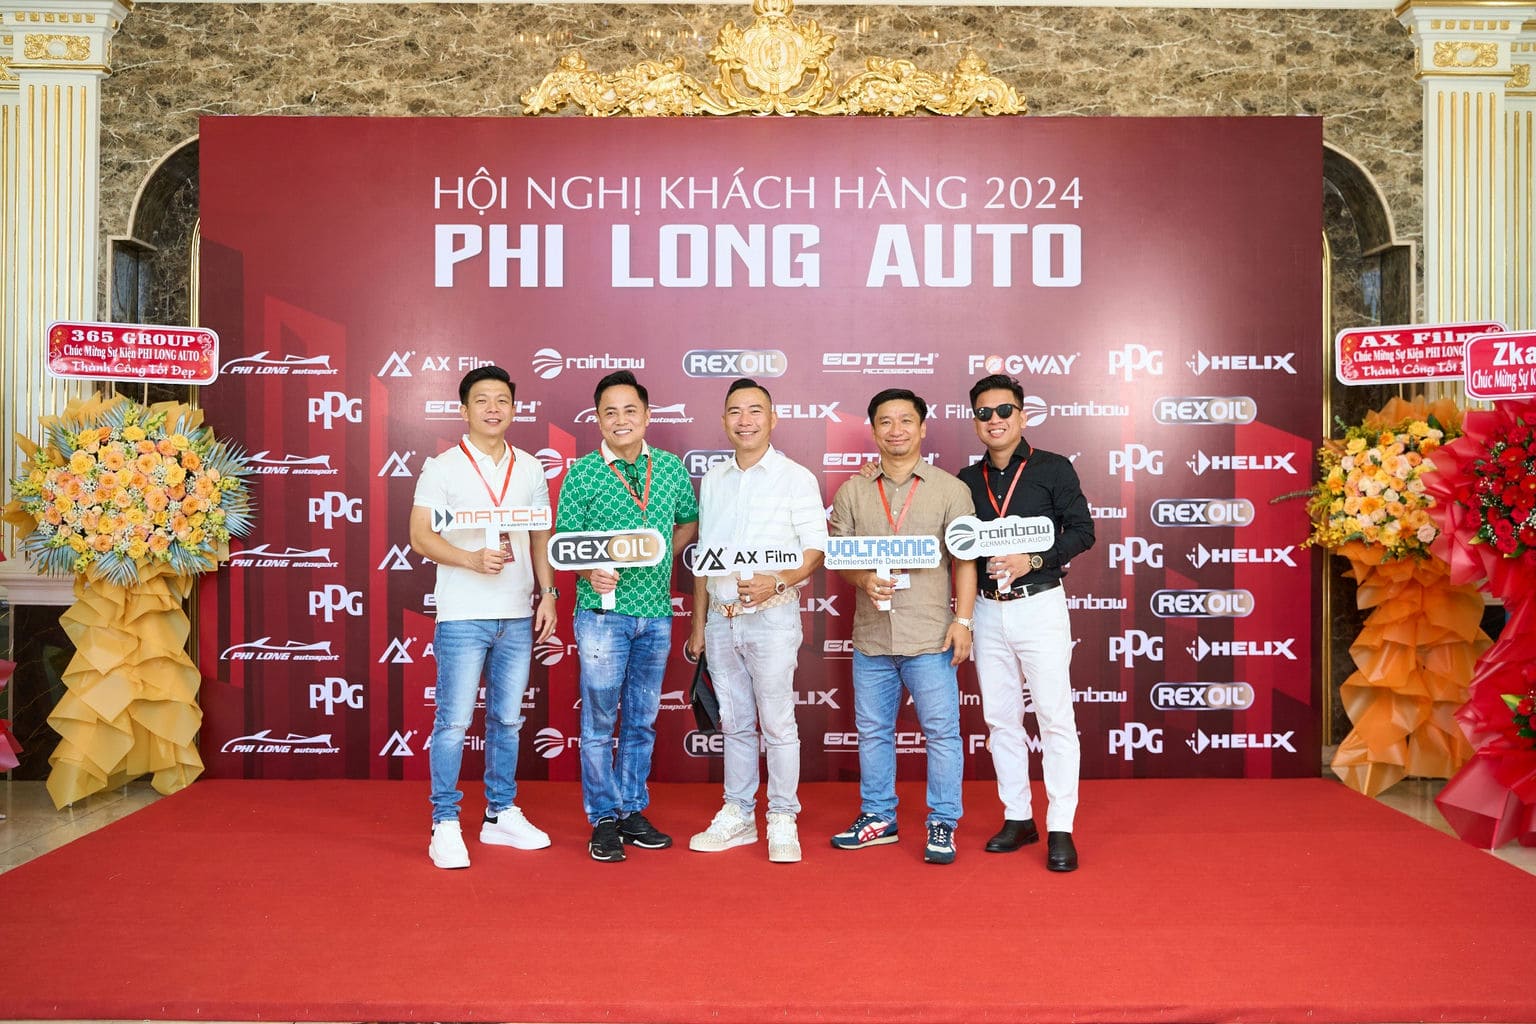 HOI NGHI KHACH HANG PHI LONG AUTO 2024 37 | Phi Long Auto